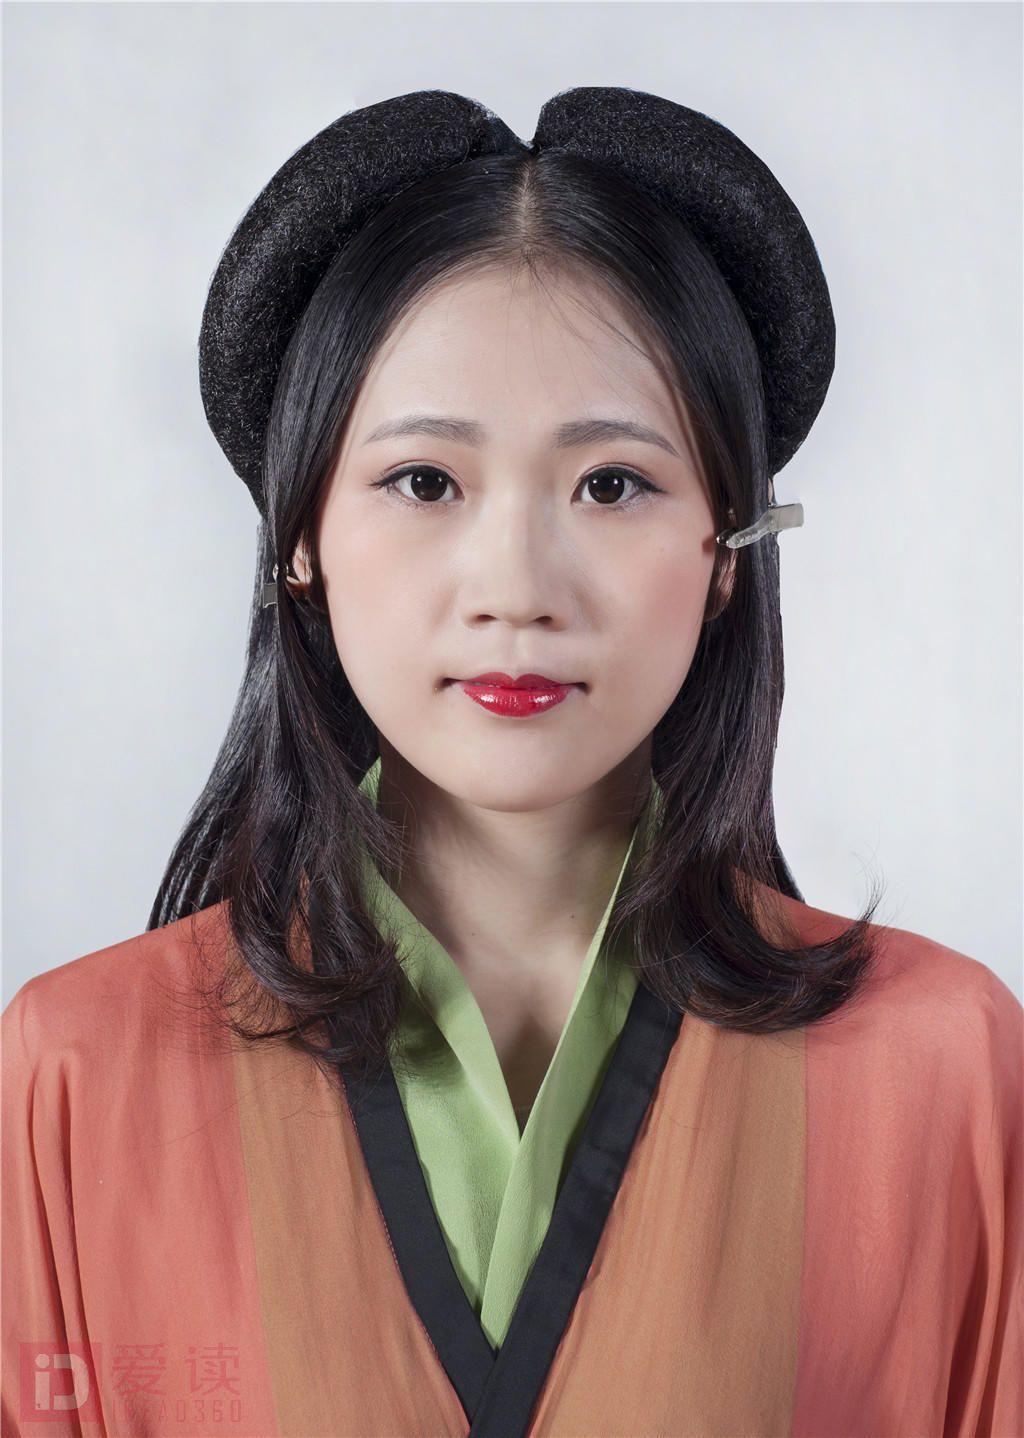 古装影视发型之东汉贵族女子造型(一)